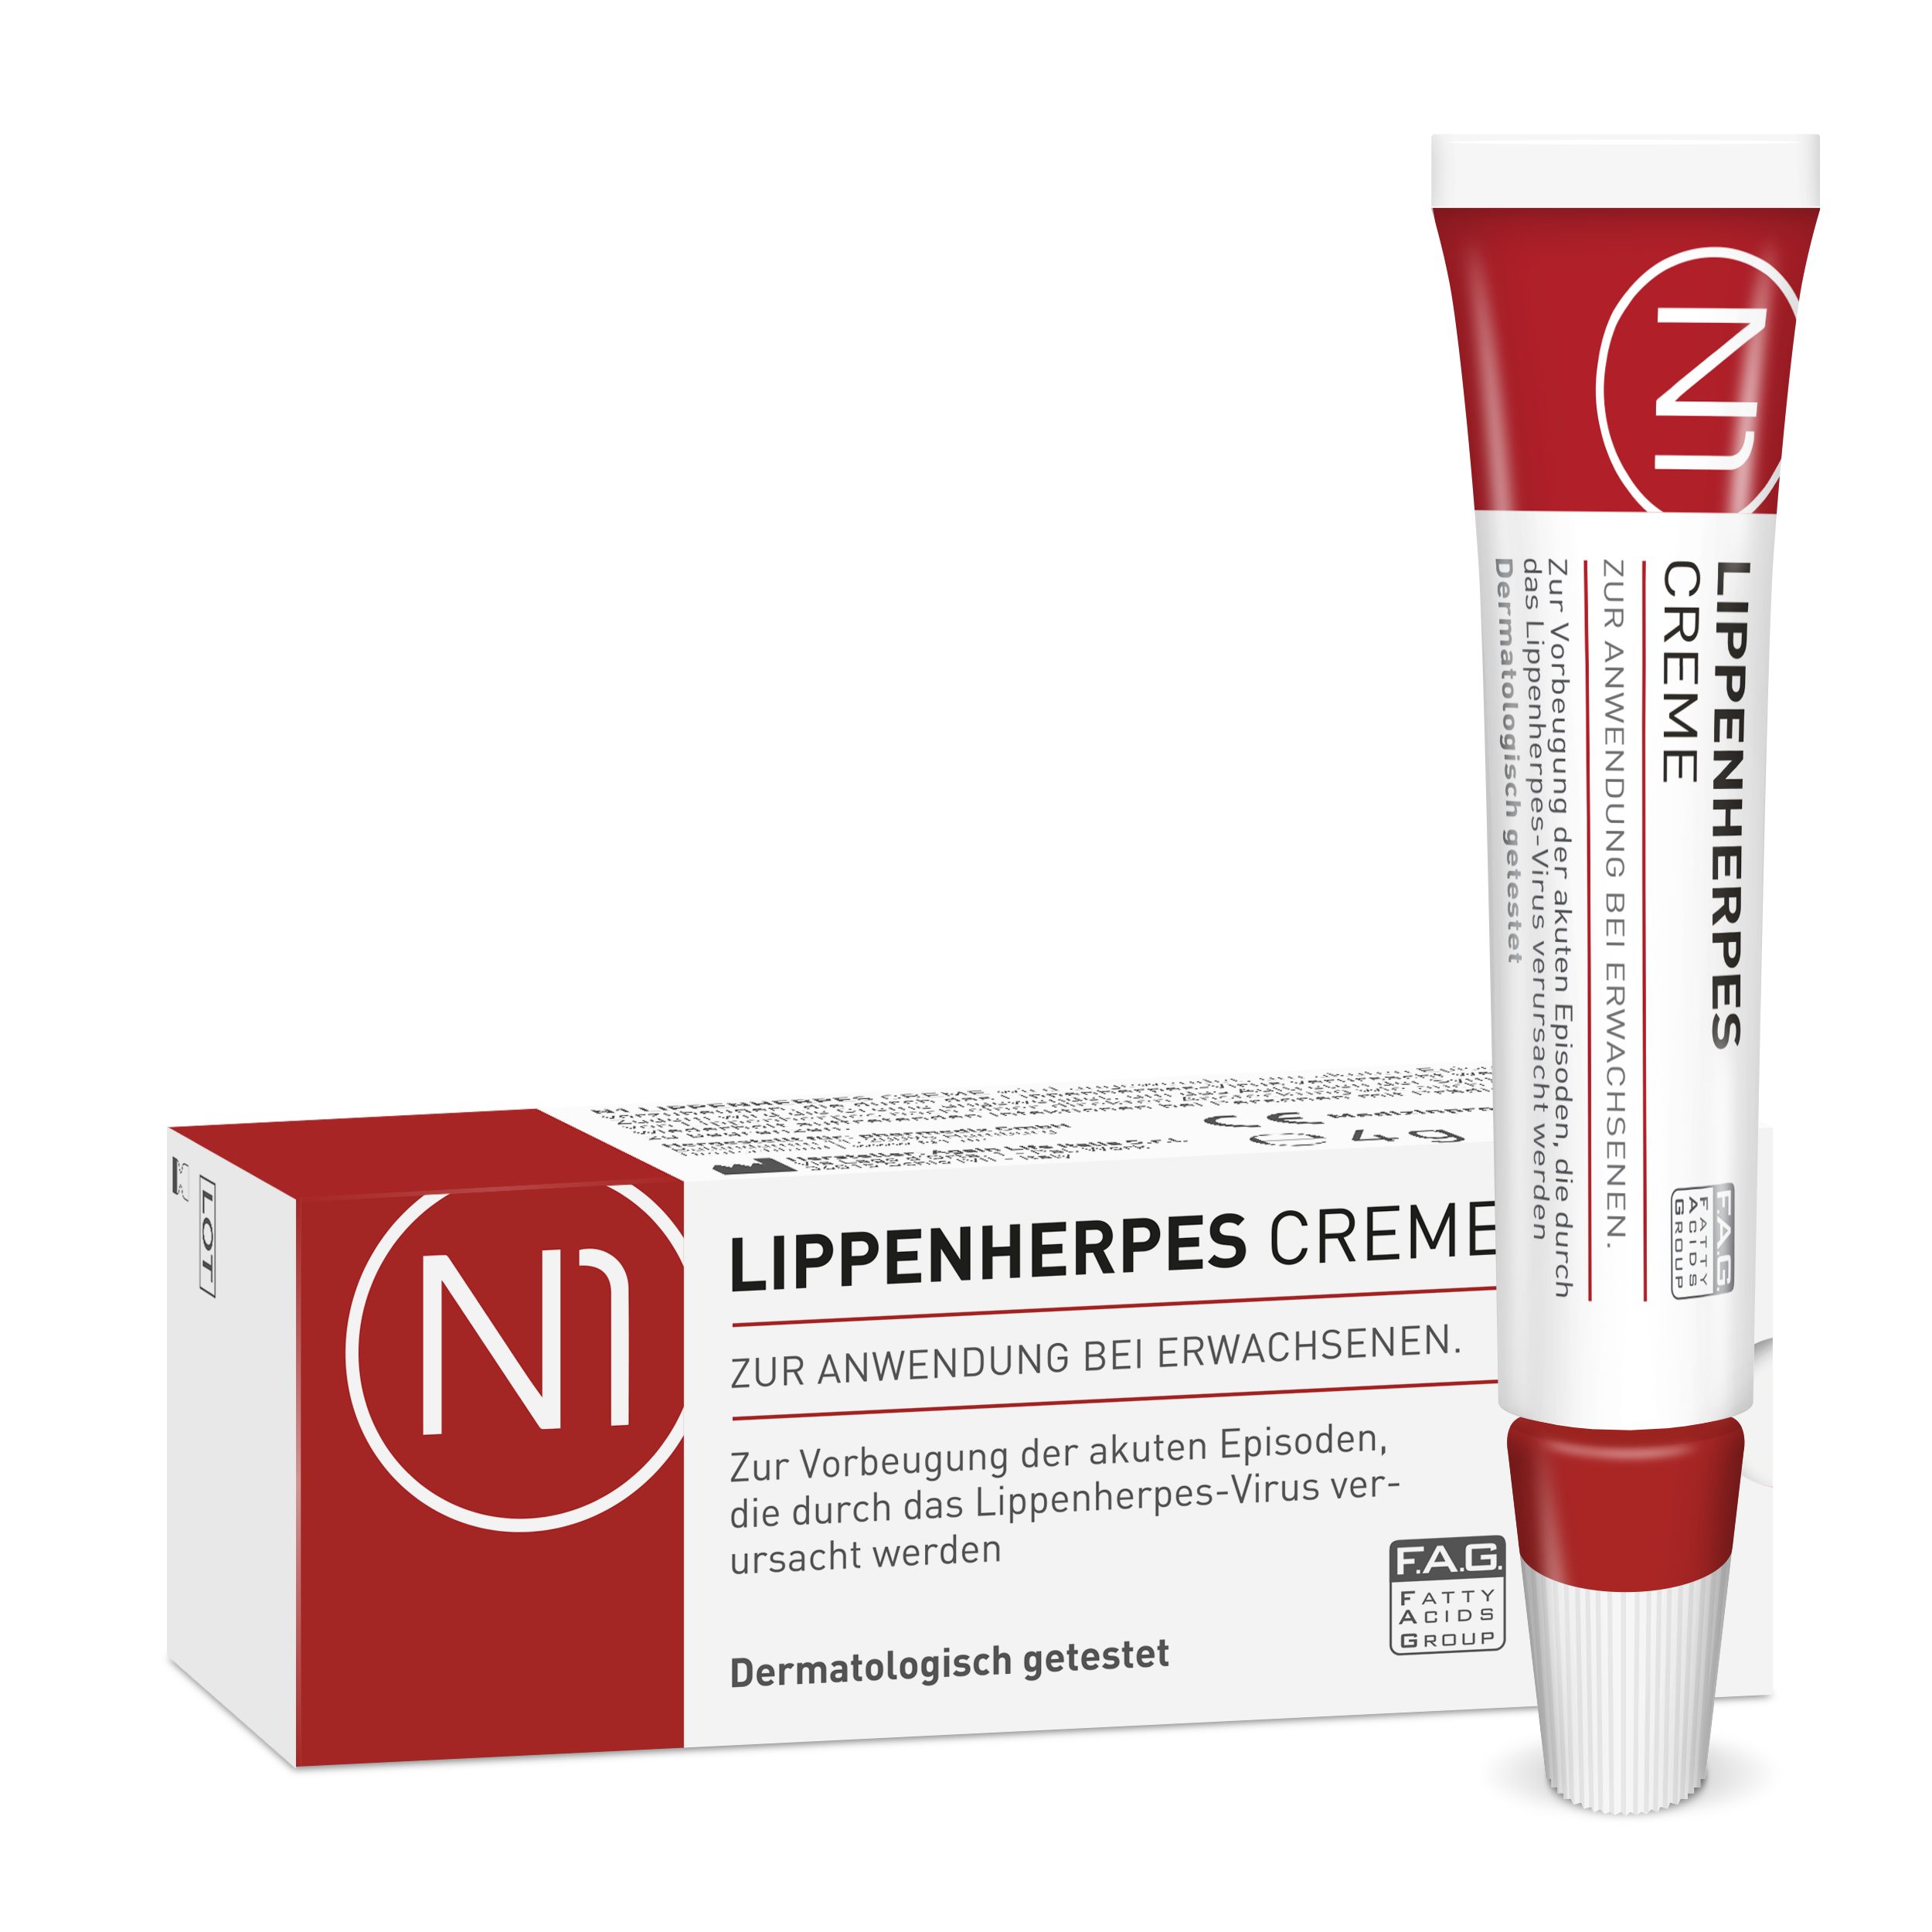 N1 Healthcare Lippencreme Herpes Monate sofort, bei Creme patentiert, 6 haltbar wirkt geöffnet Lippenherpes